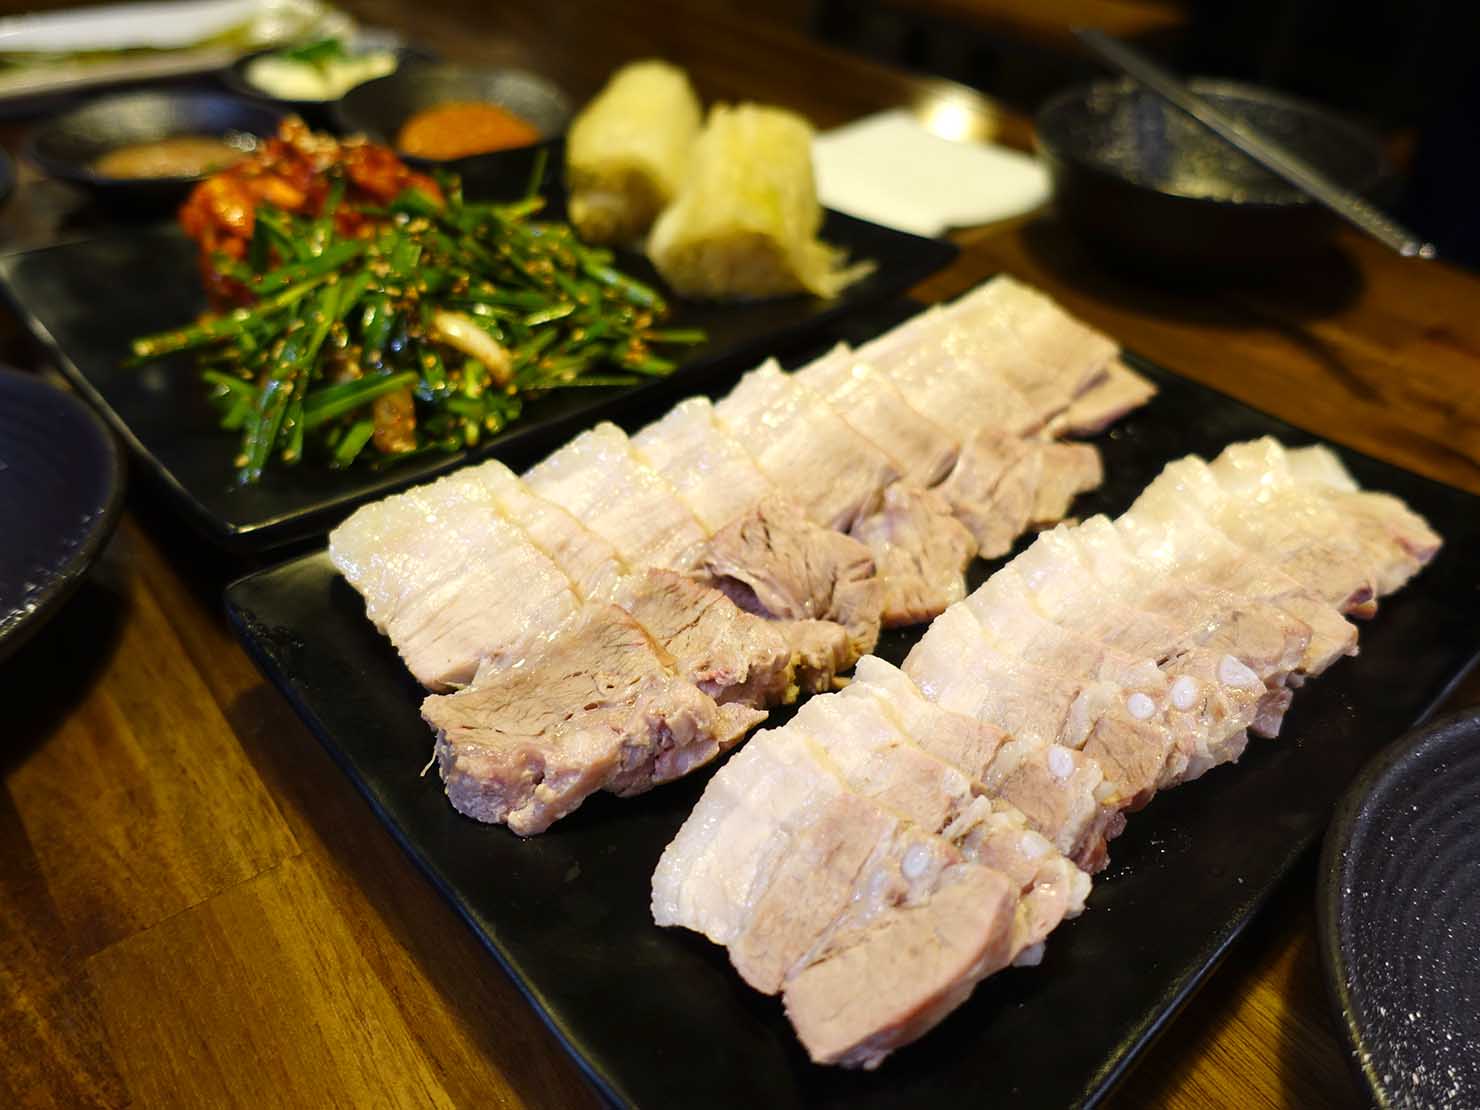 ソウル・孔德（공덕/コンドク）駅周辺で食べた韓国グルメ「ポッサム（보쌈）」